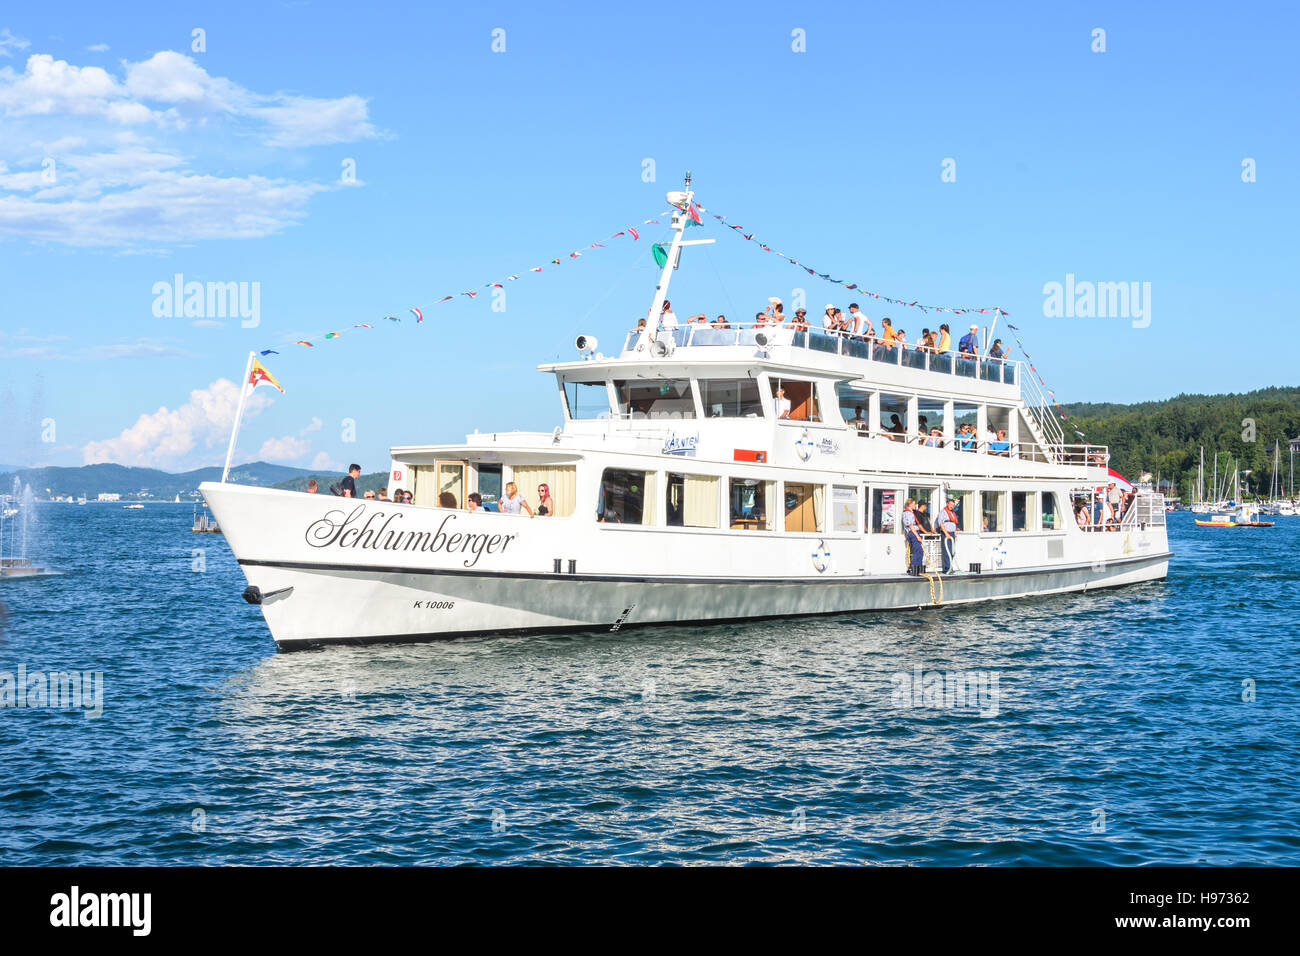 Velden, Autriche - le 14 août 2016 : Schlumberger navire à passagers sur le lac Worthersee en haute saison touristique sur ligne régulière Banque D'Images